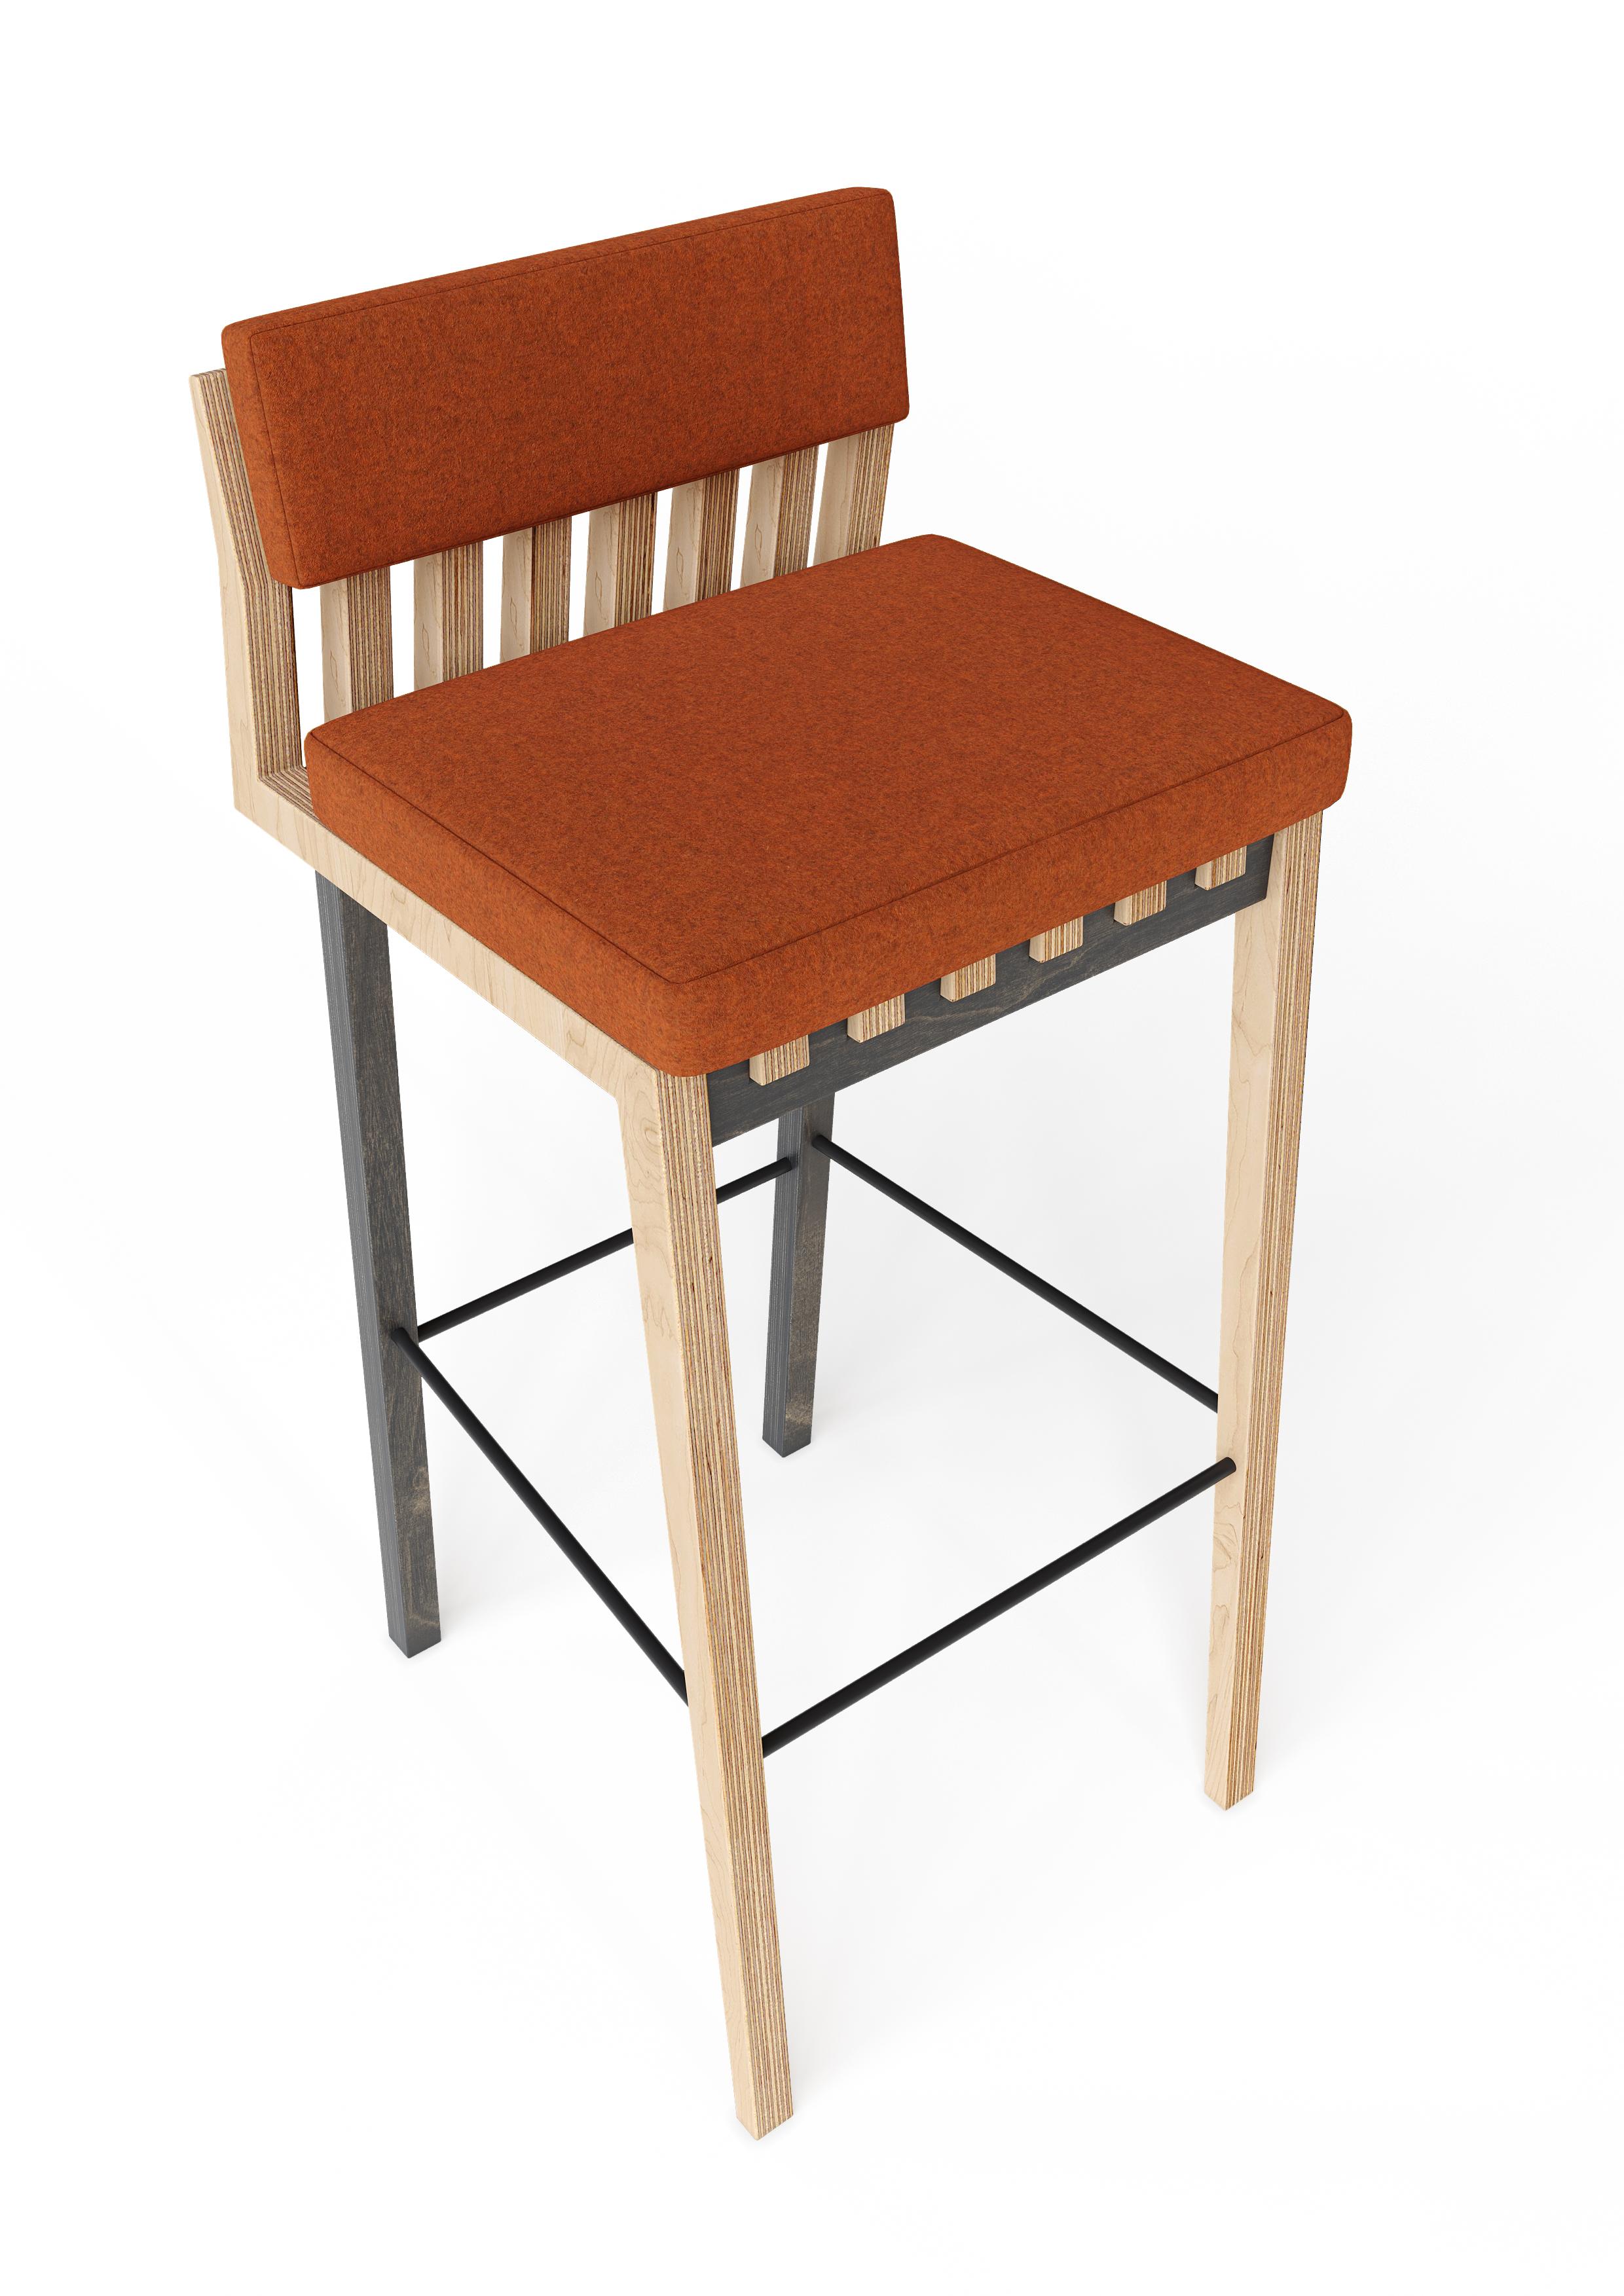 Birch Scandinavian Designer Stool Bar Chair For Sale